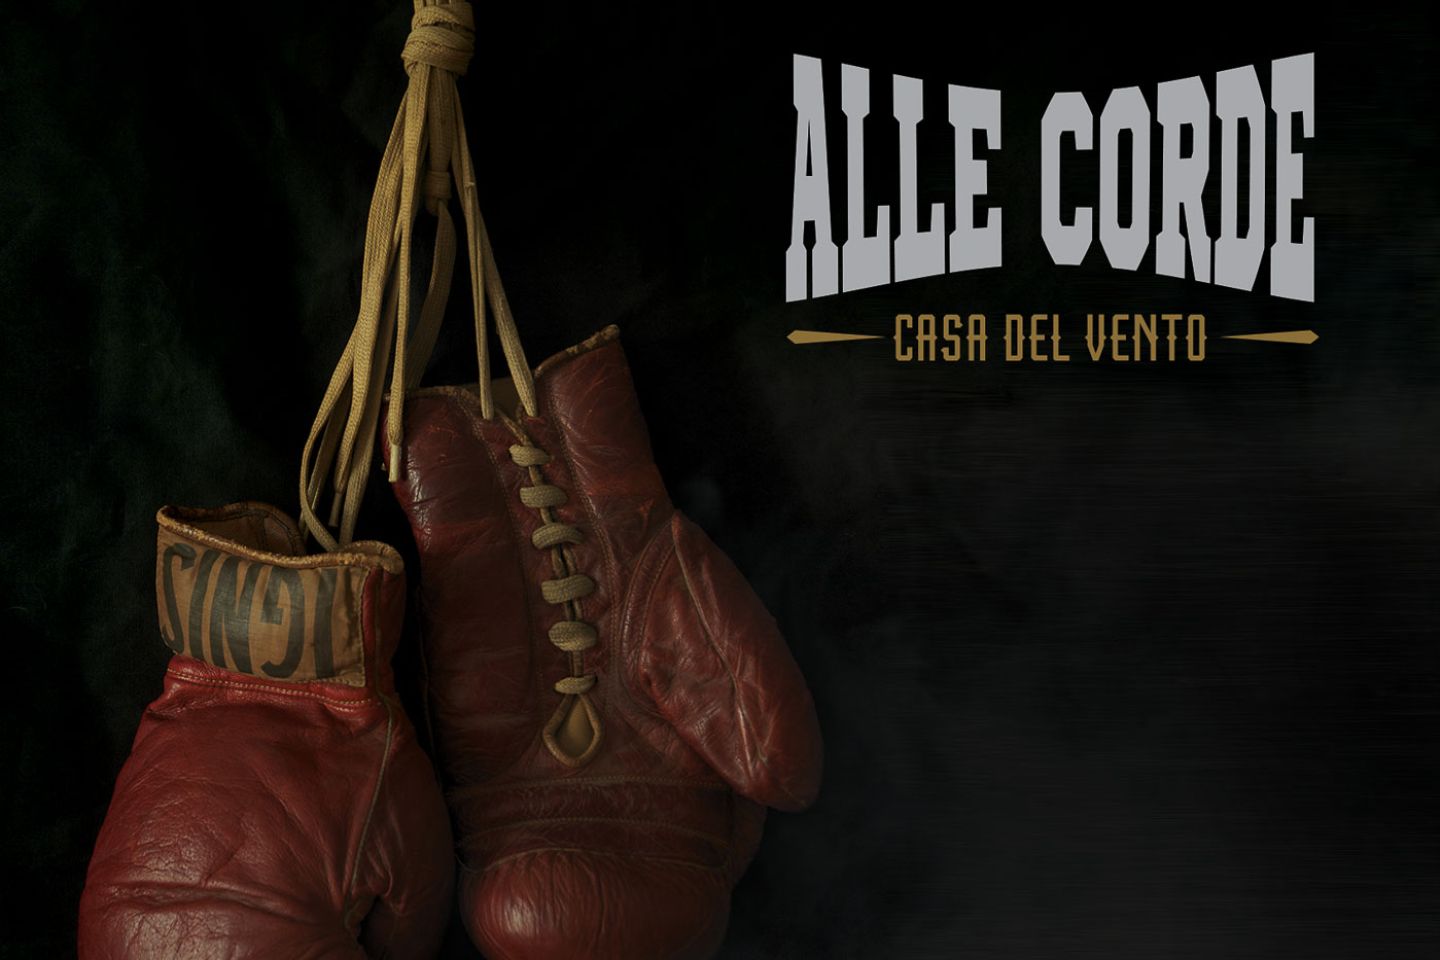 Casa del Vento “Alle Corde” (New Model Label, 2022)